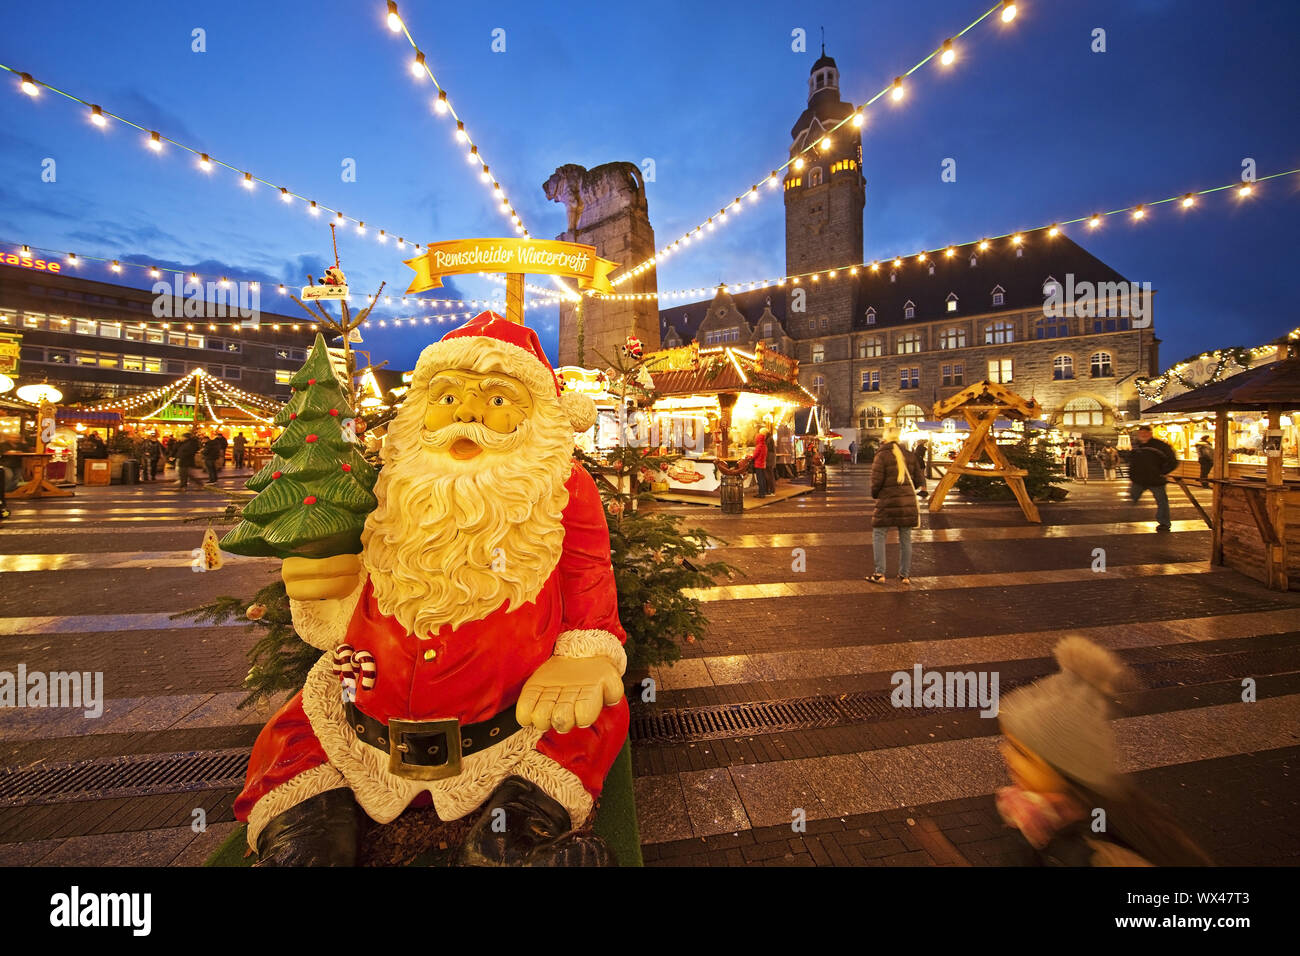 Weihnachtsmarkt vor dem Rathaus, Alt-Remscheid, Remscheid, Deutschland, Europa Stockfoto